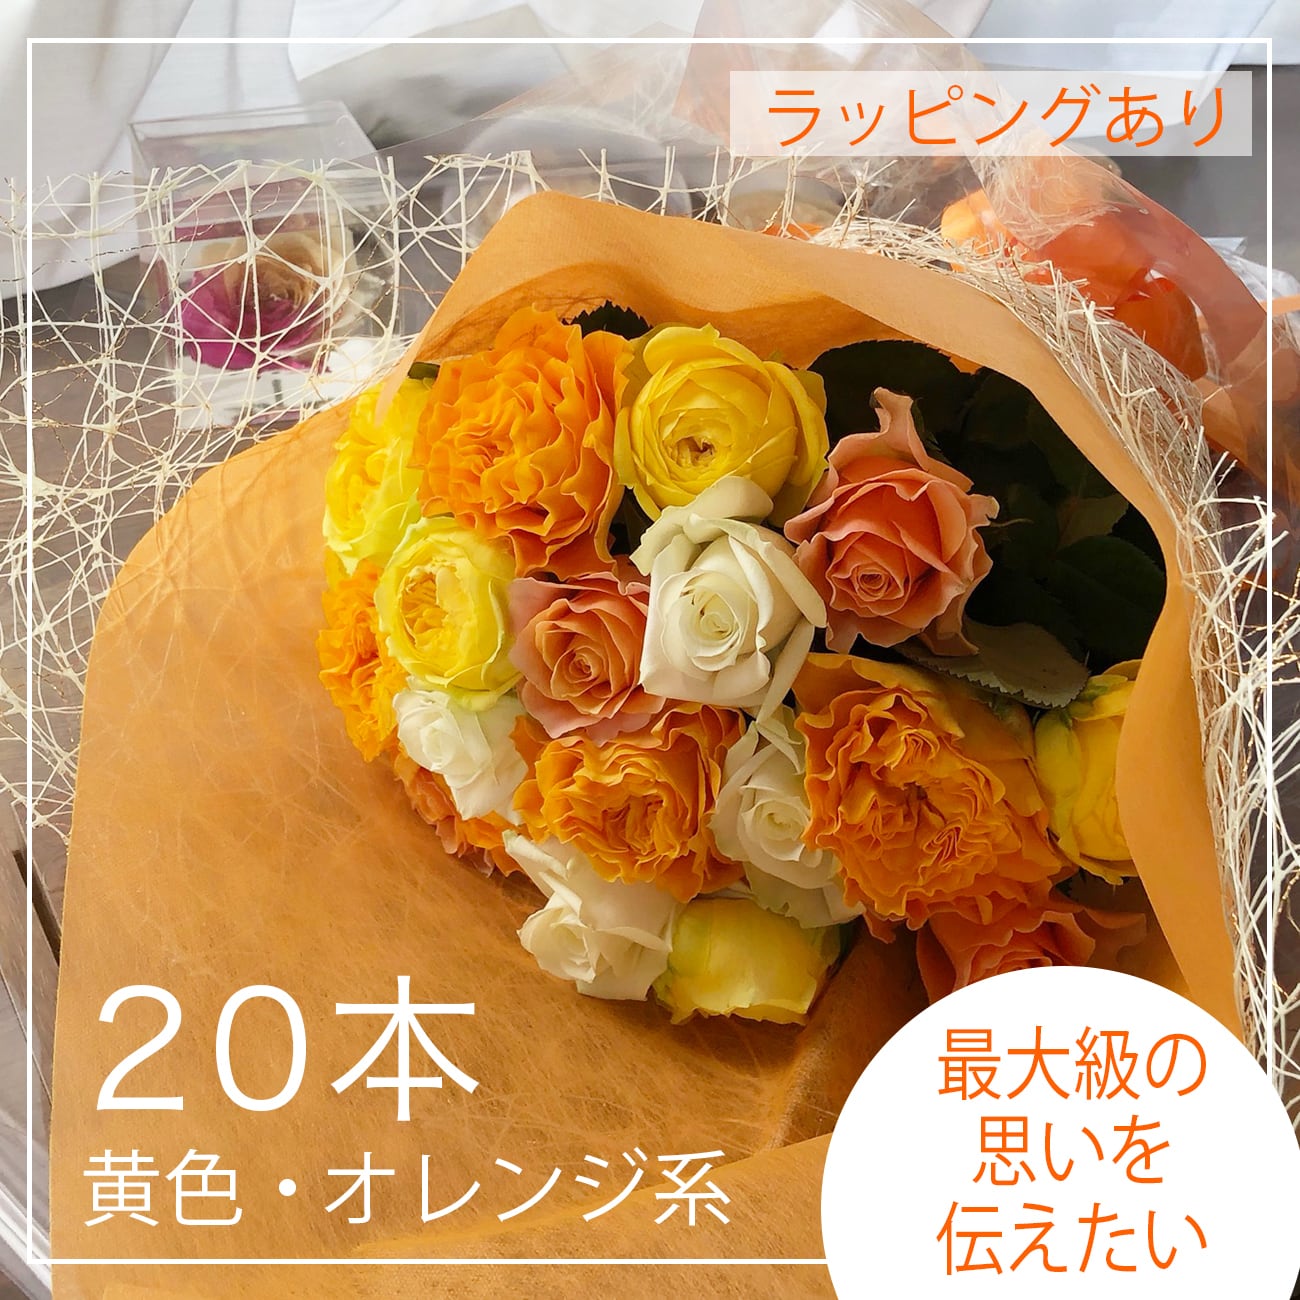 薔薇の花束セット贈答用20本黄色オレンジ系